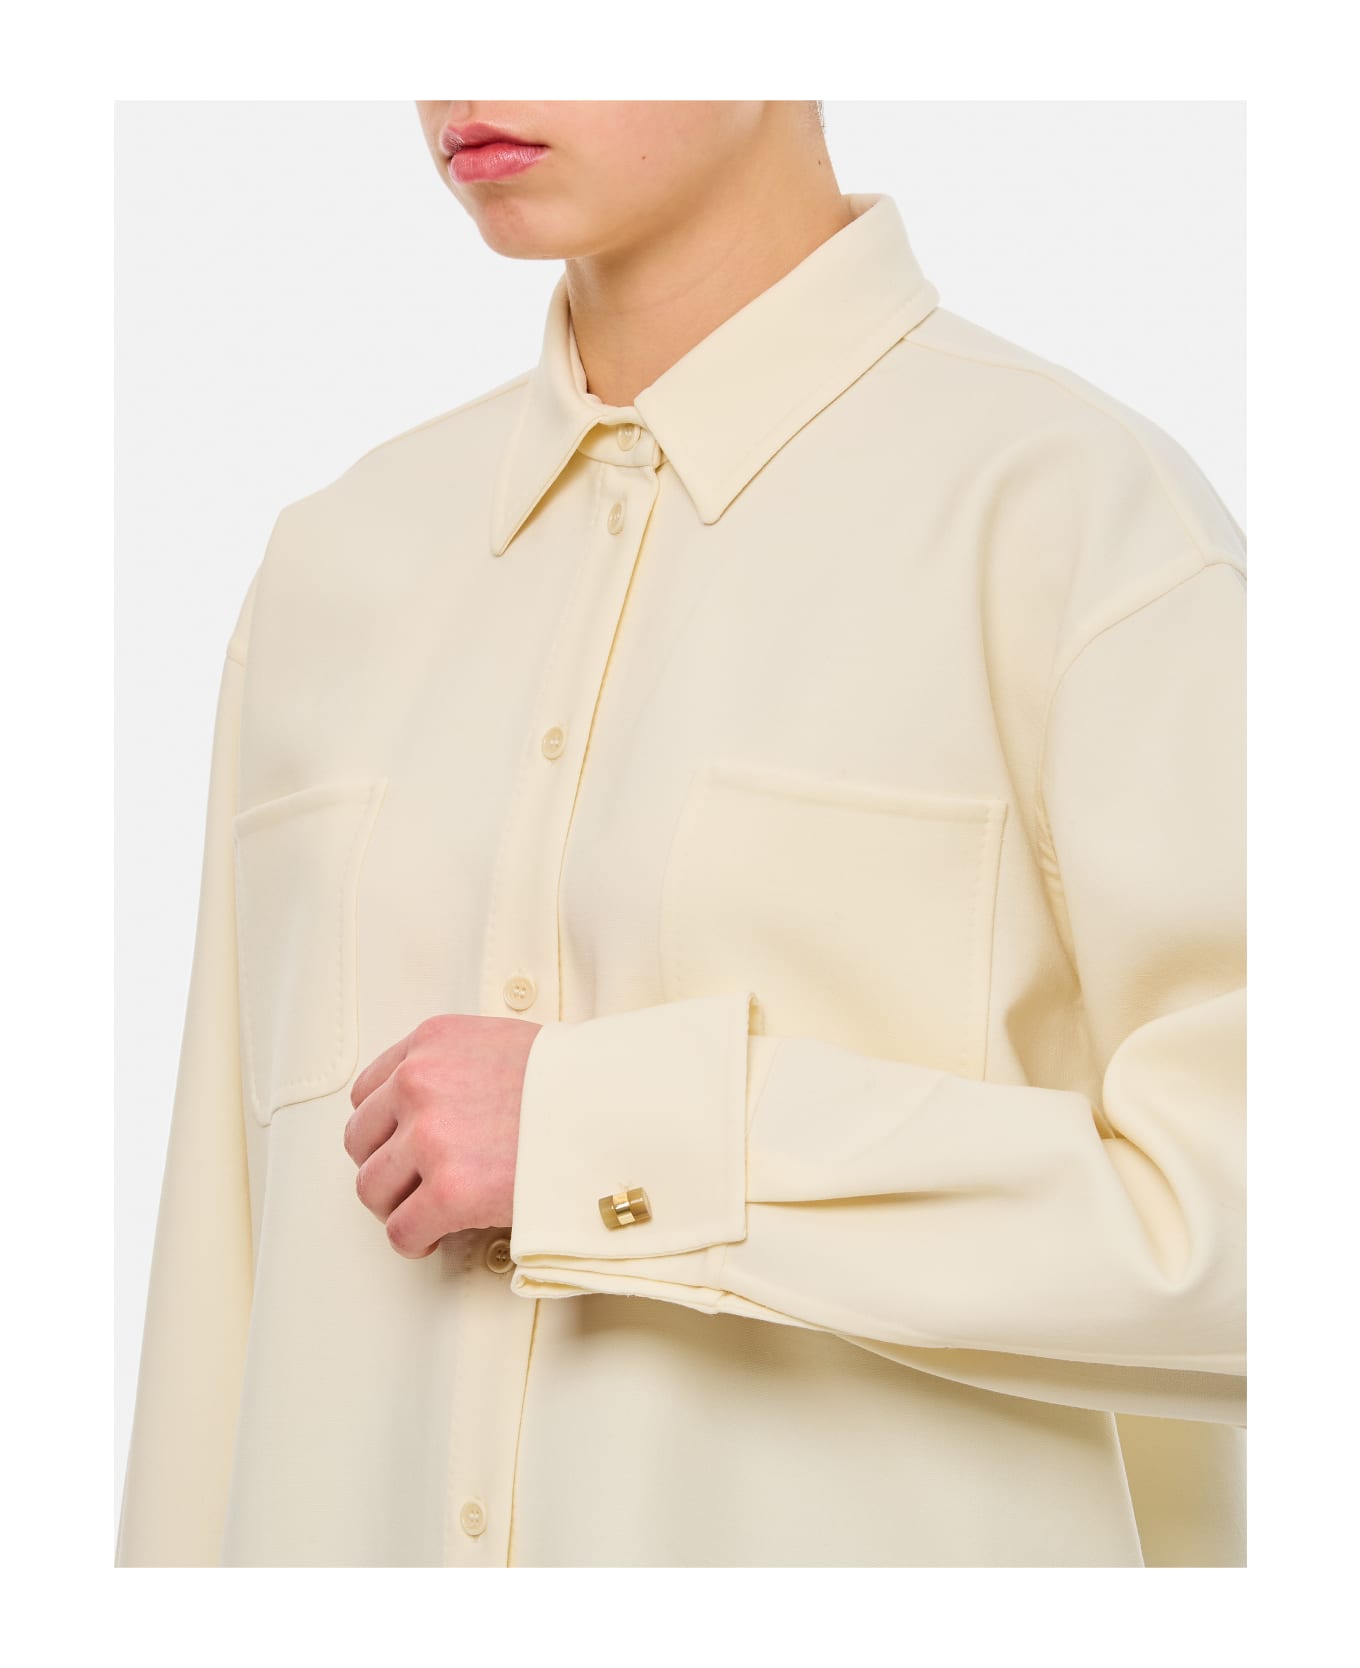 Max Mara Tirolo Jersey Overshirt - White